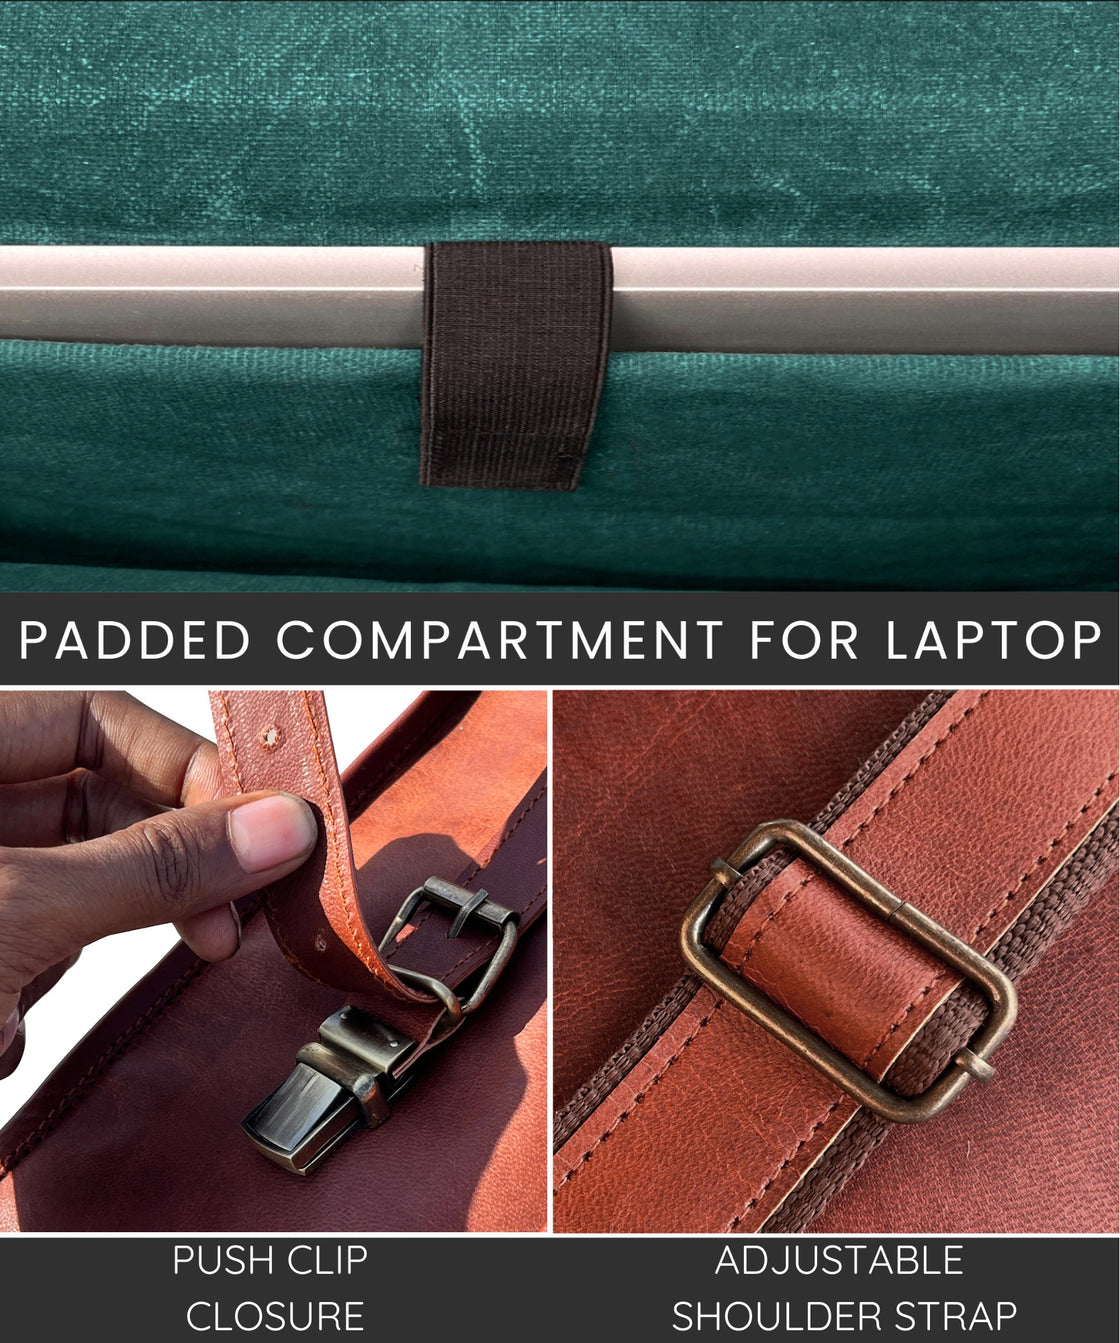 16" Leather Satchel Laptop Messenger Bag